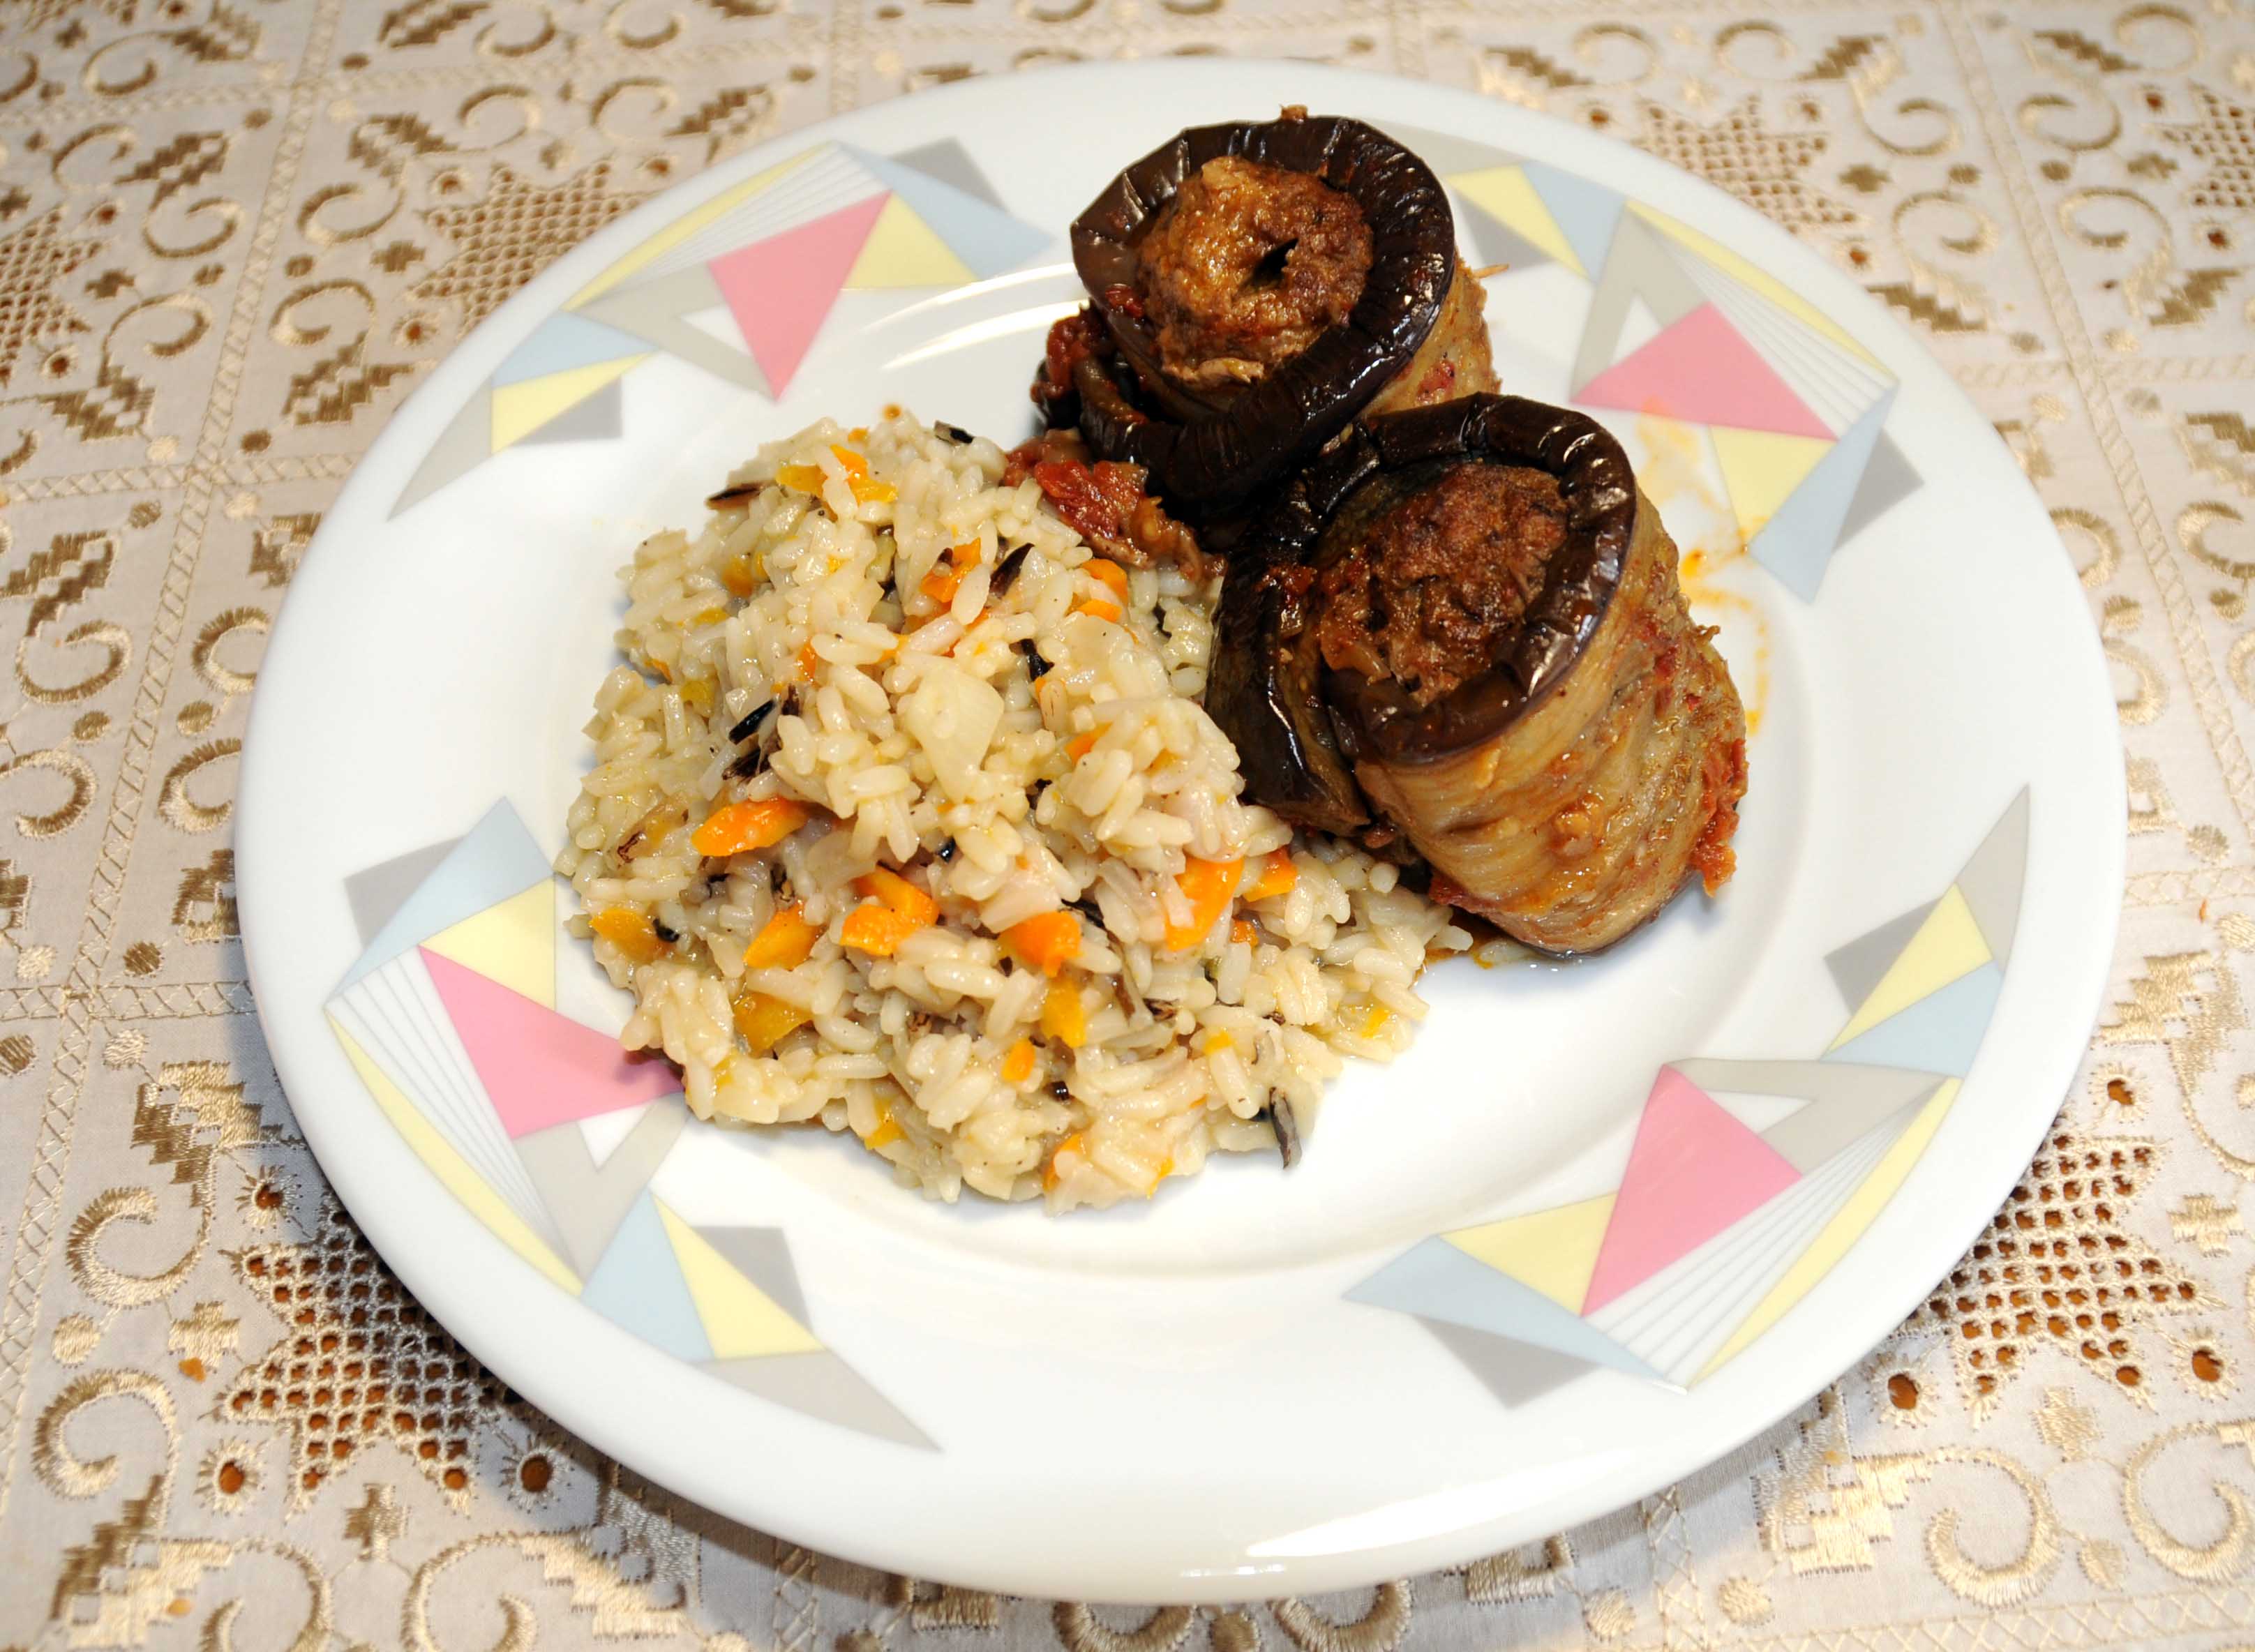 Σουτζουκάκια με μελιτζάνες ρολάκια και ρύζι - Suzhoukakia with aubergine rocks and rice